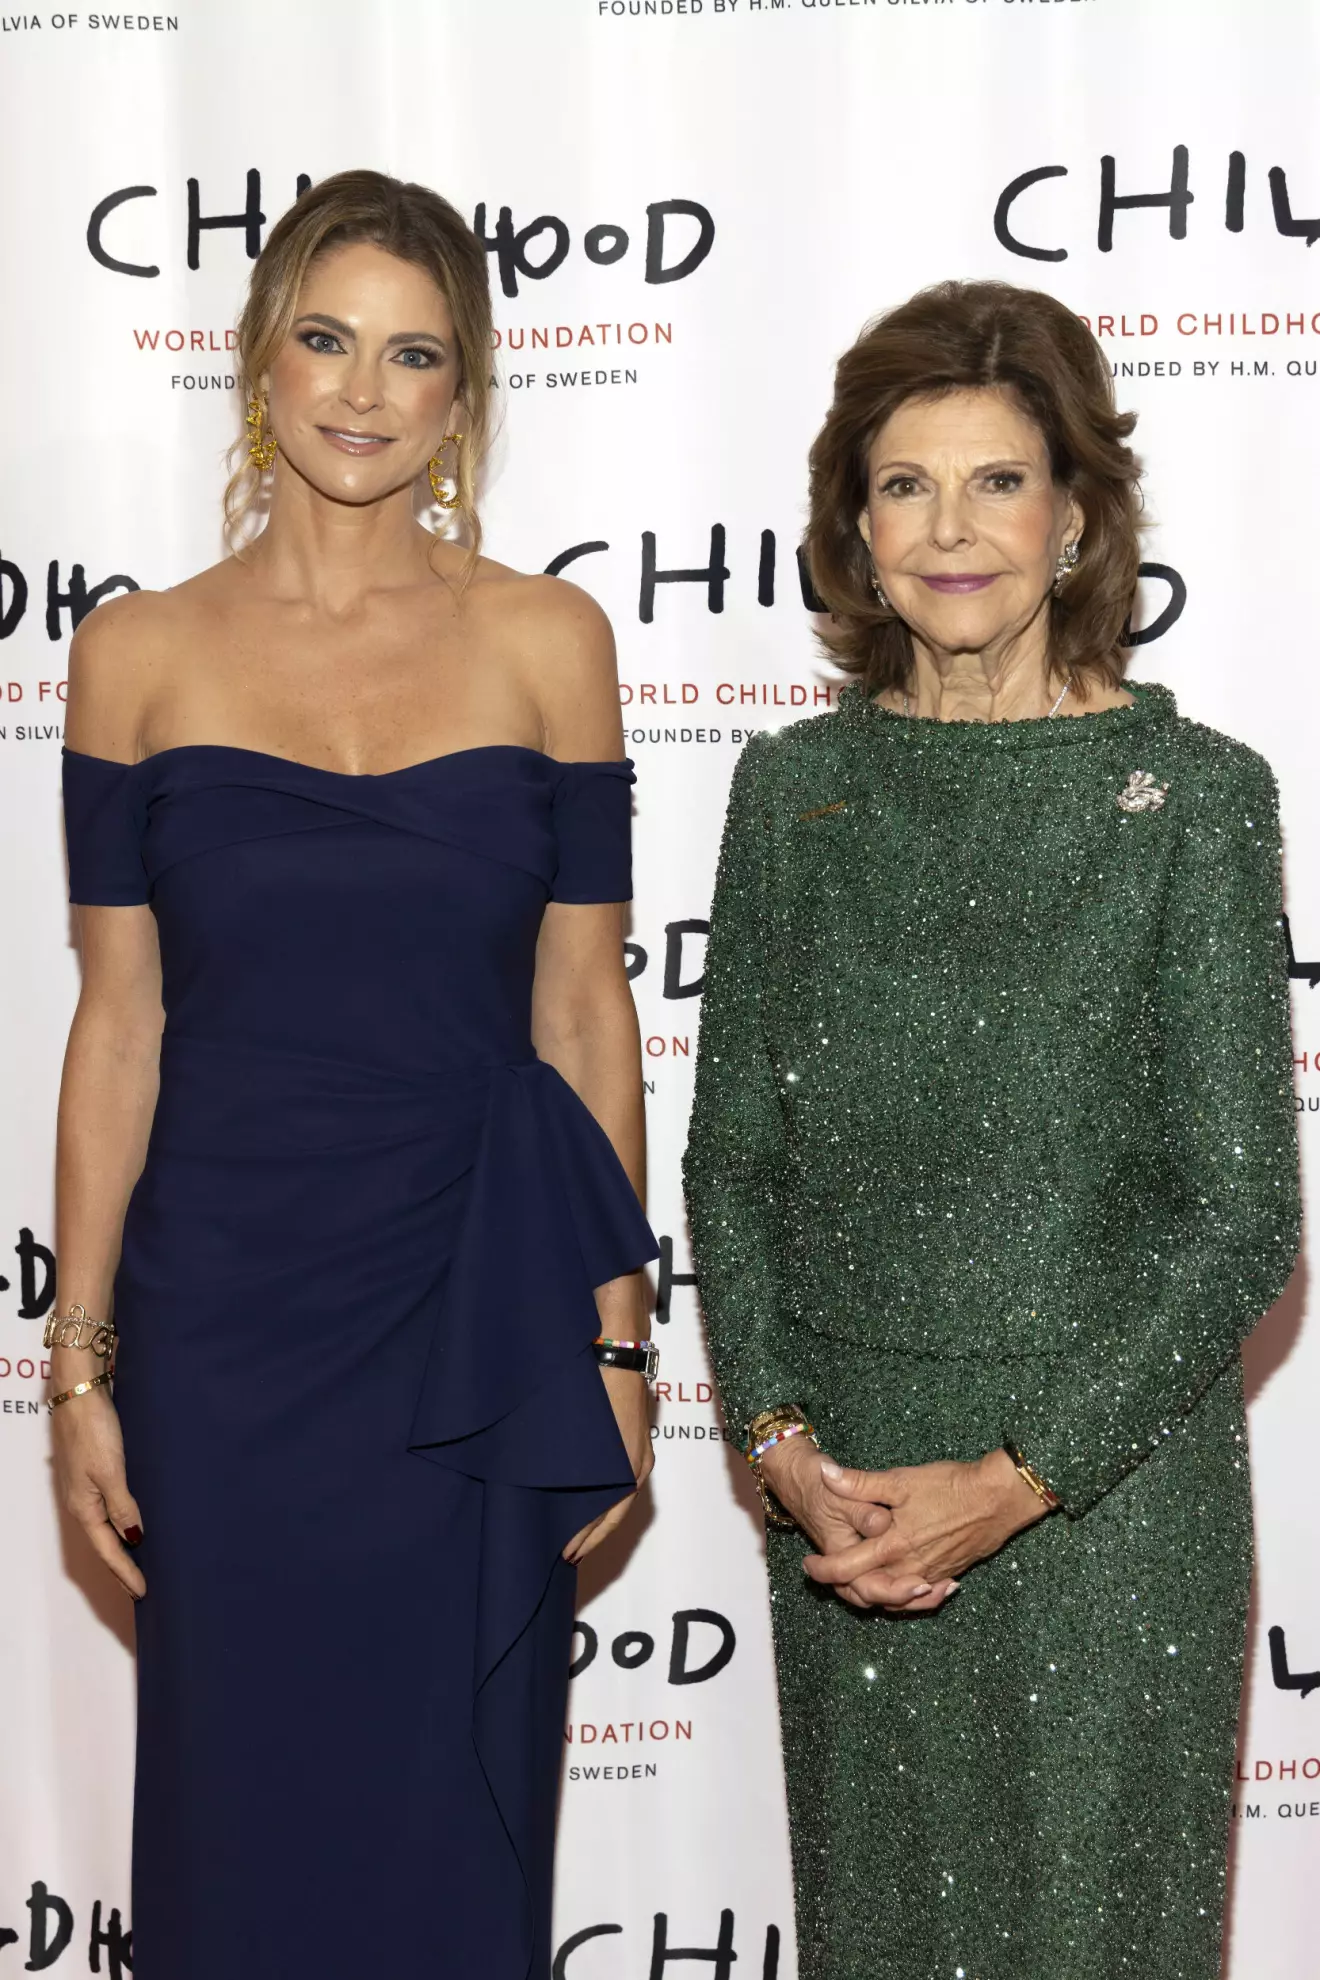 Prinsessan Madeleine och drottning Silvia anländer till World Childhood Foundation galamiddag i New York